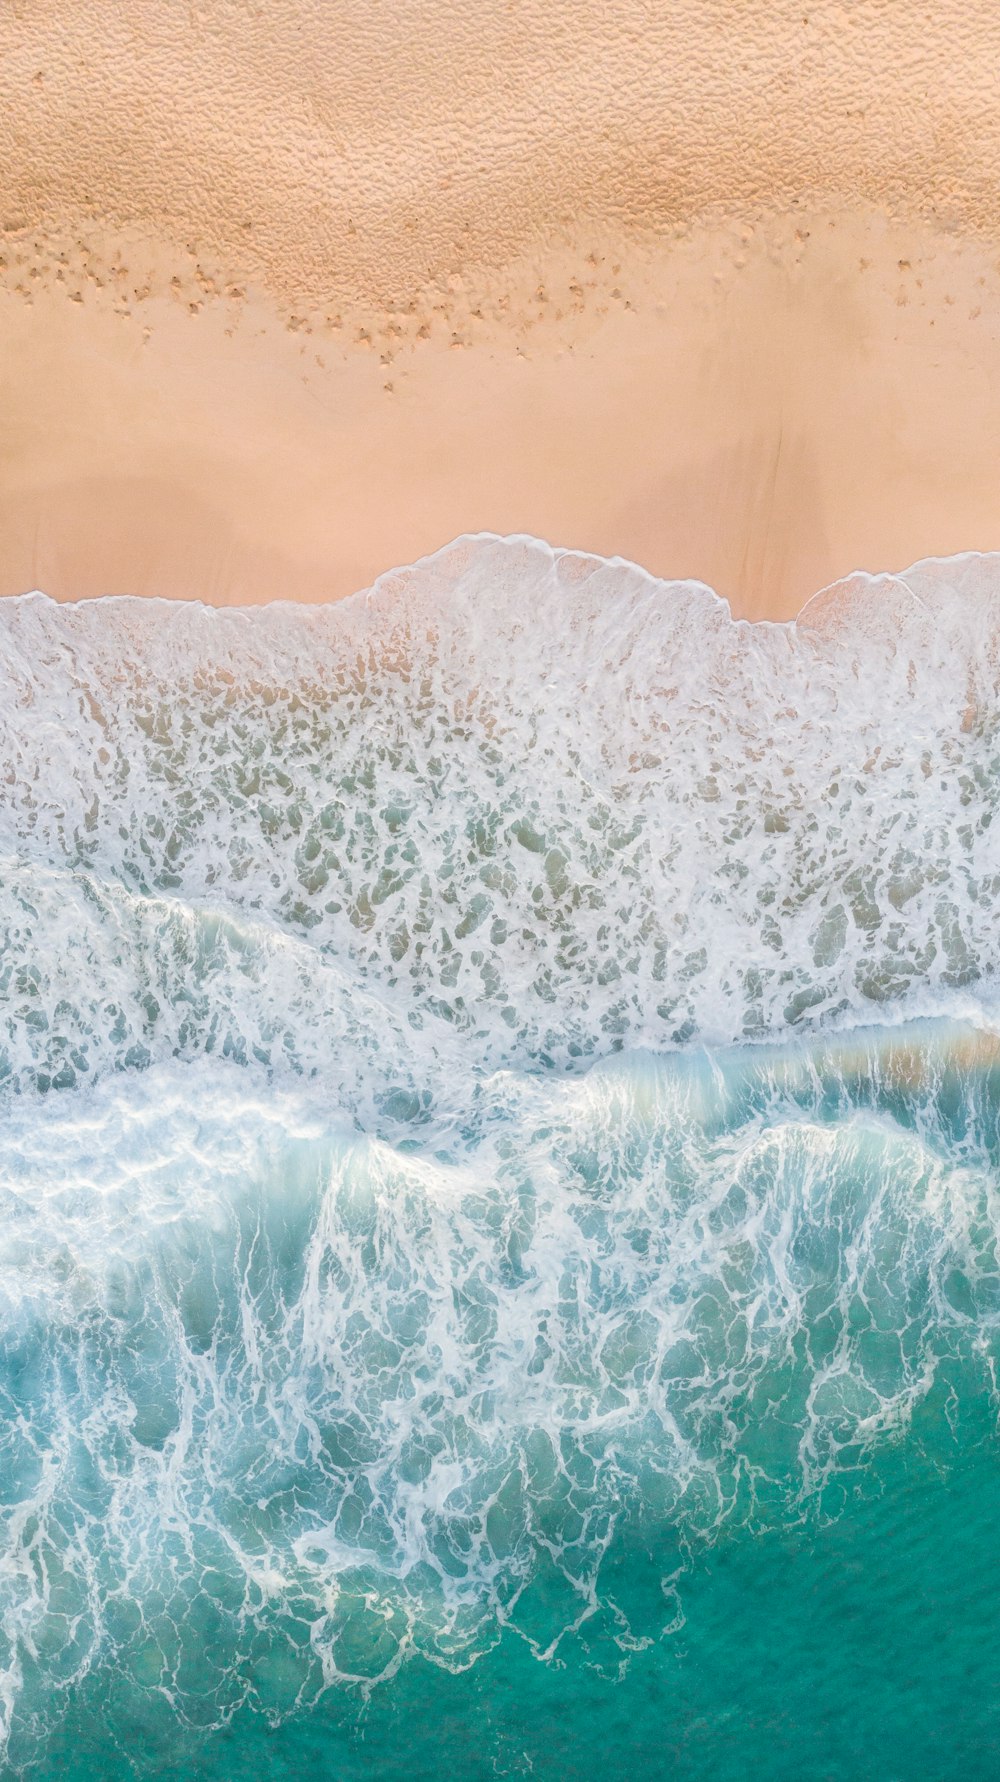 fotografia aérea de ondas respingando em praia de areia branca